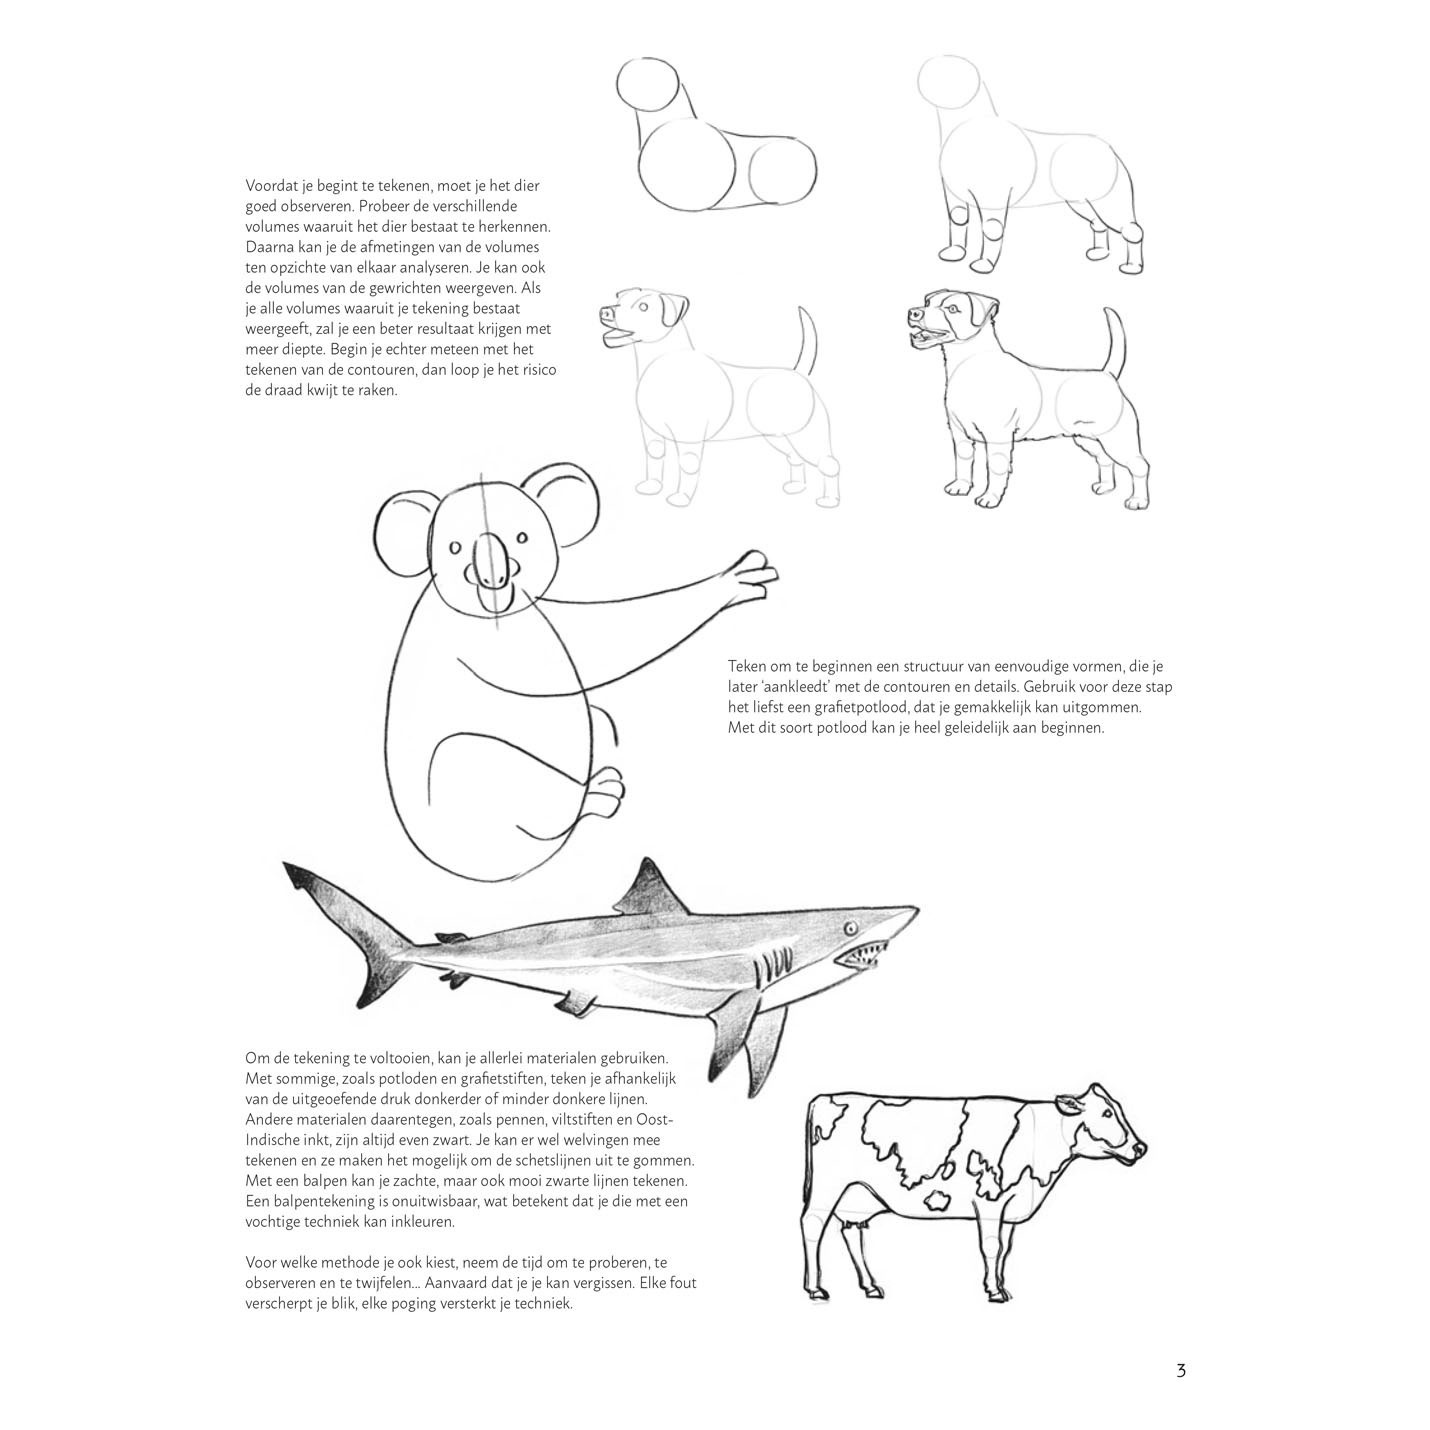 Lernen Sie Schritt für Schritt, Tiere zu zeichnen